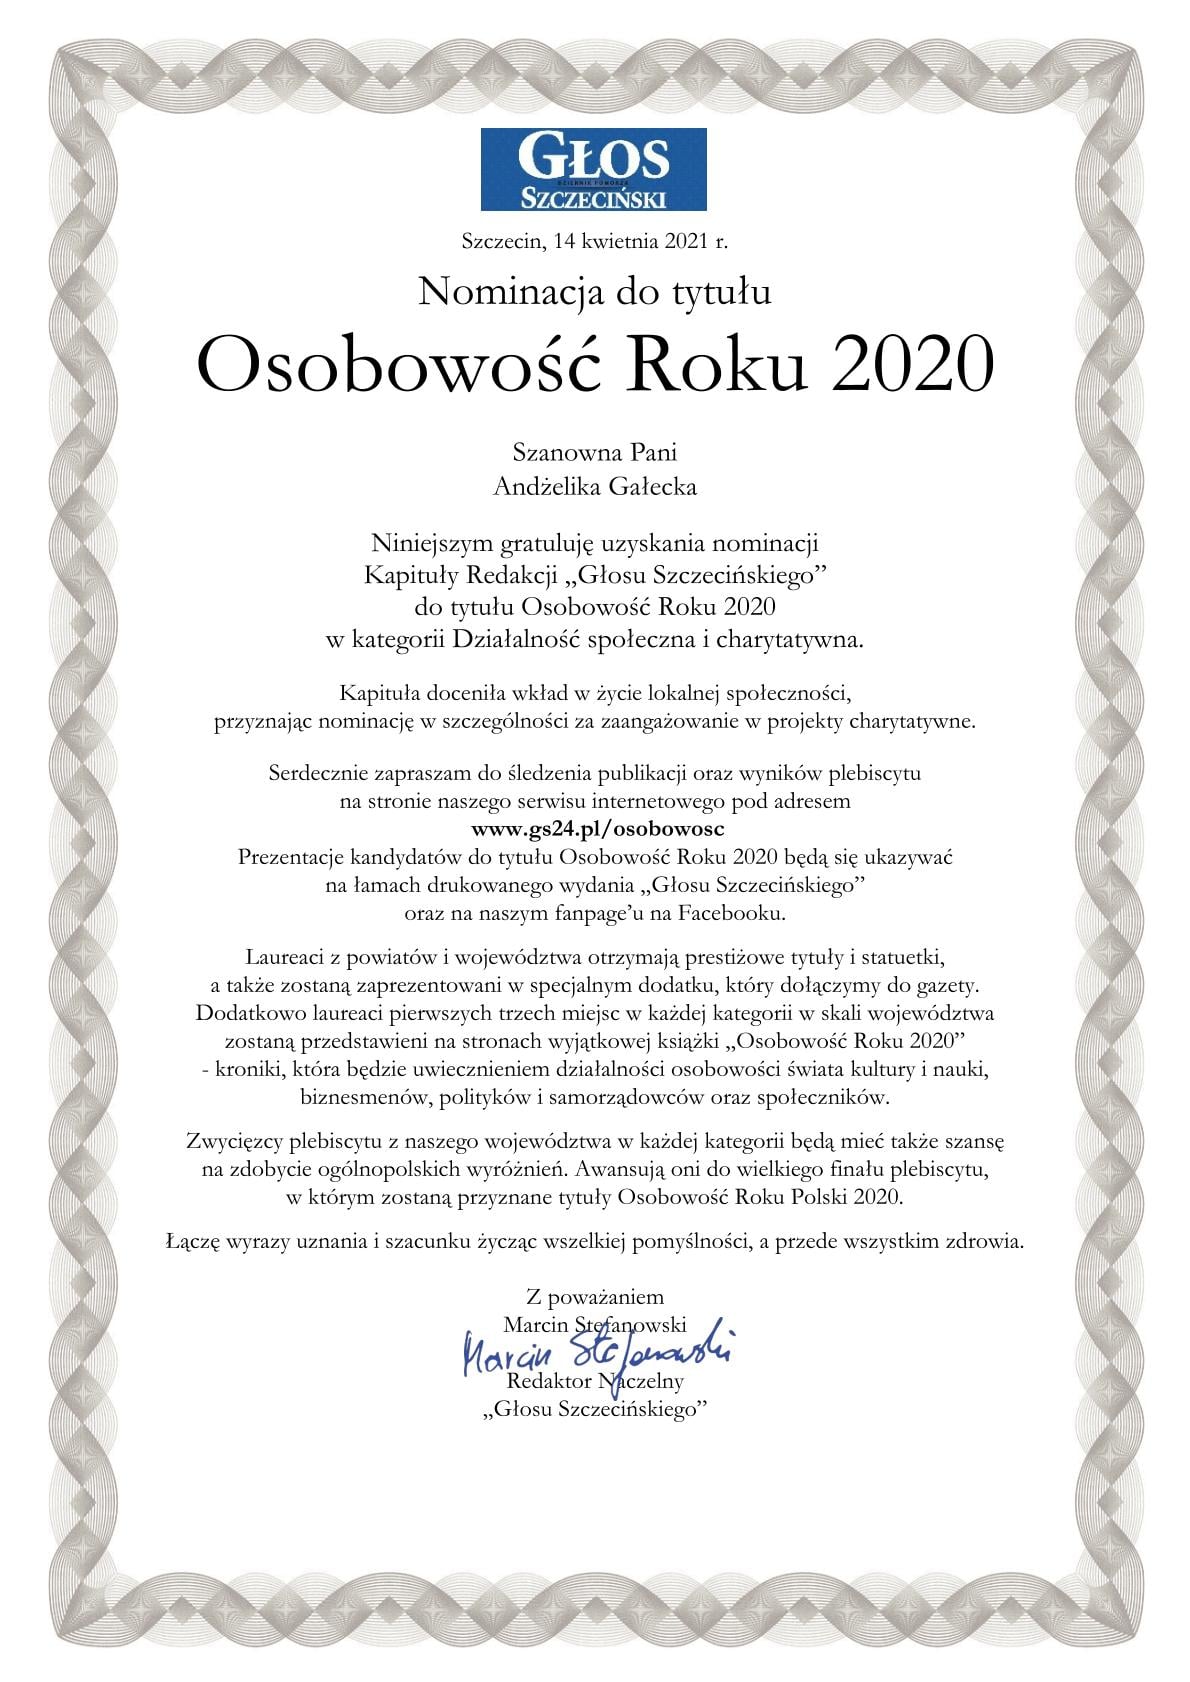 Andżelika Gałecka otrzymała nominację do tytułu Osobowość Roku 2020